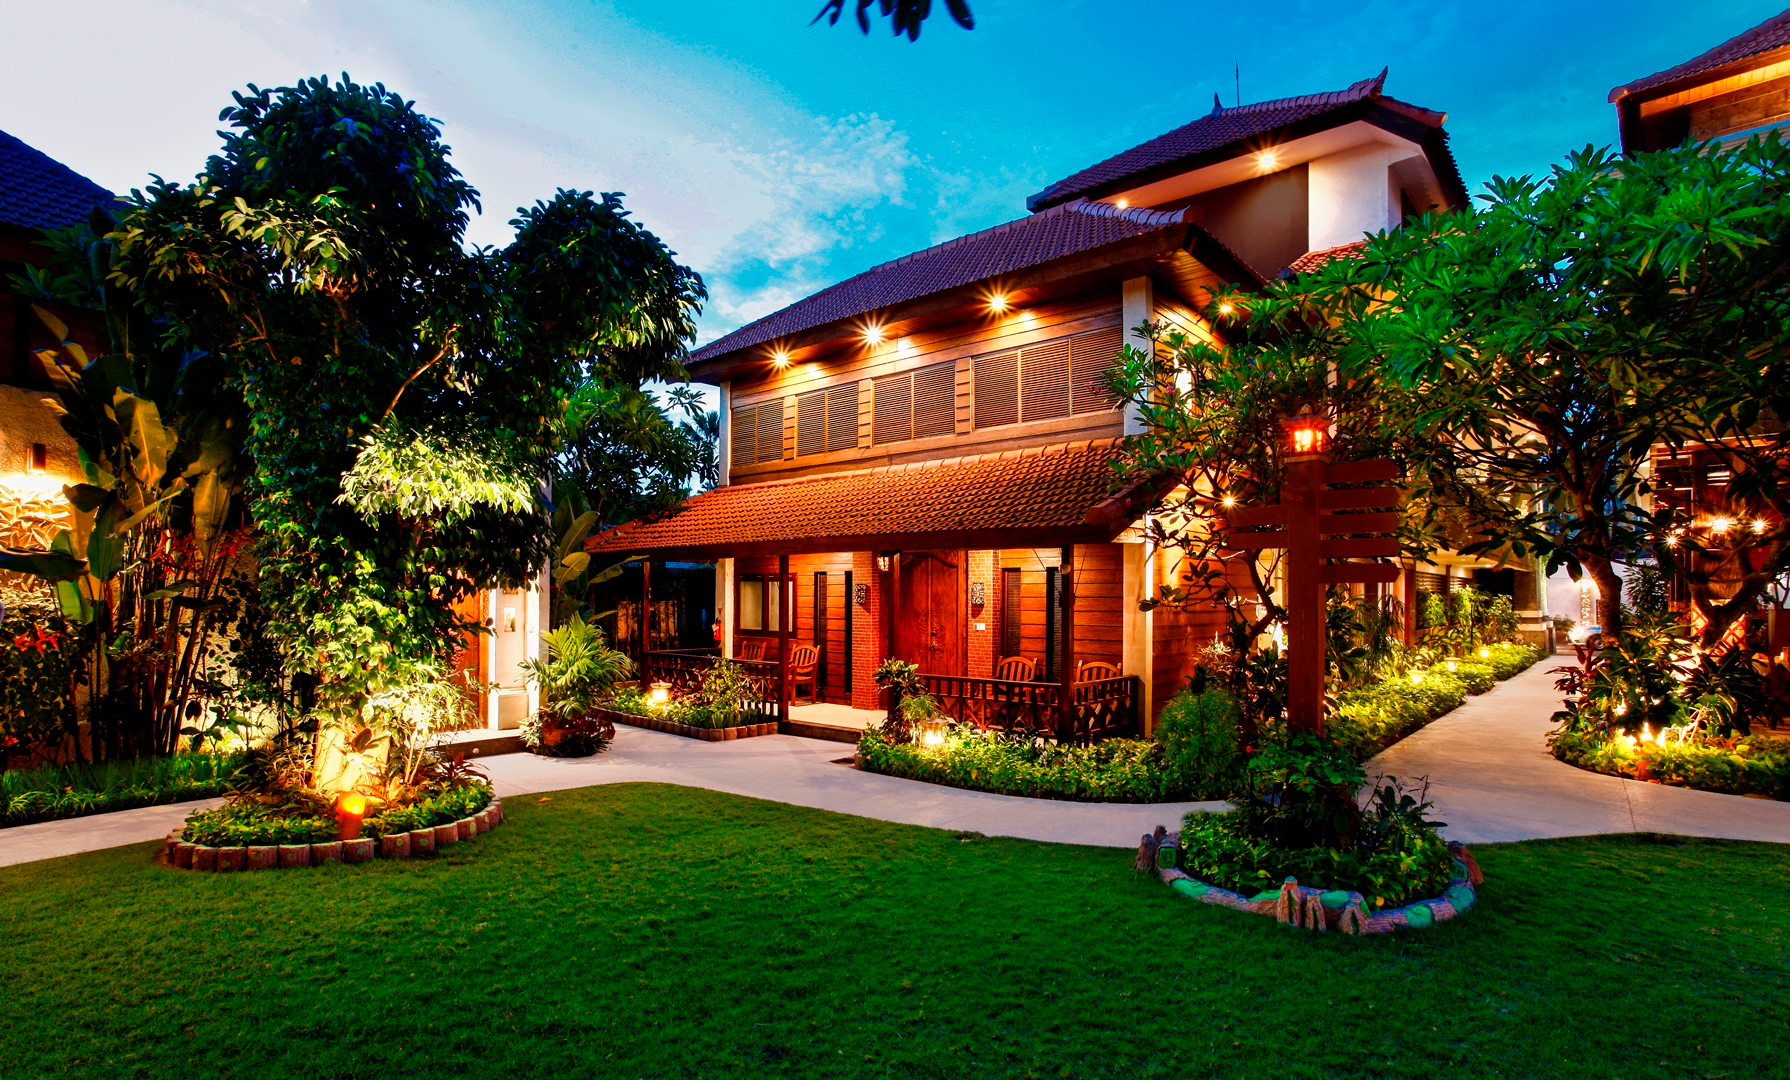 Exterior & Views 1, Astagina Resort Villa and Spa, Badung